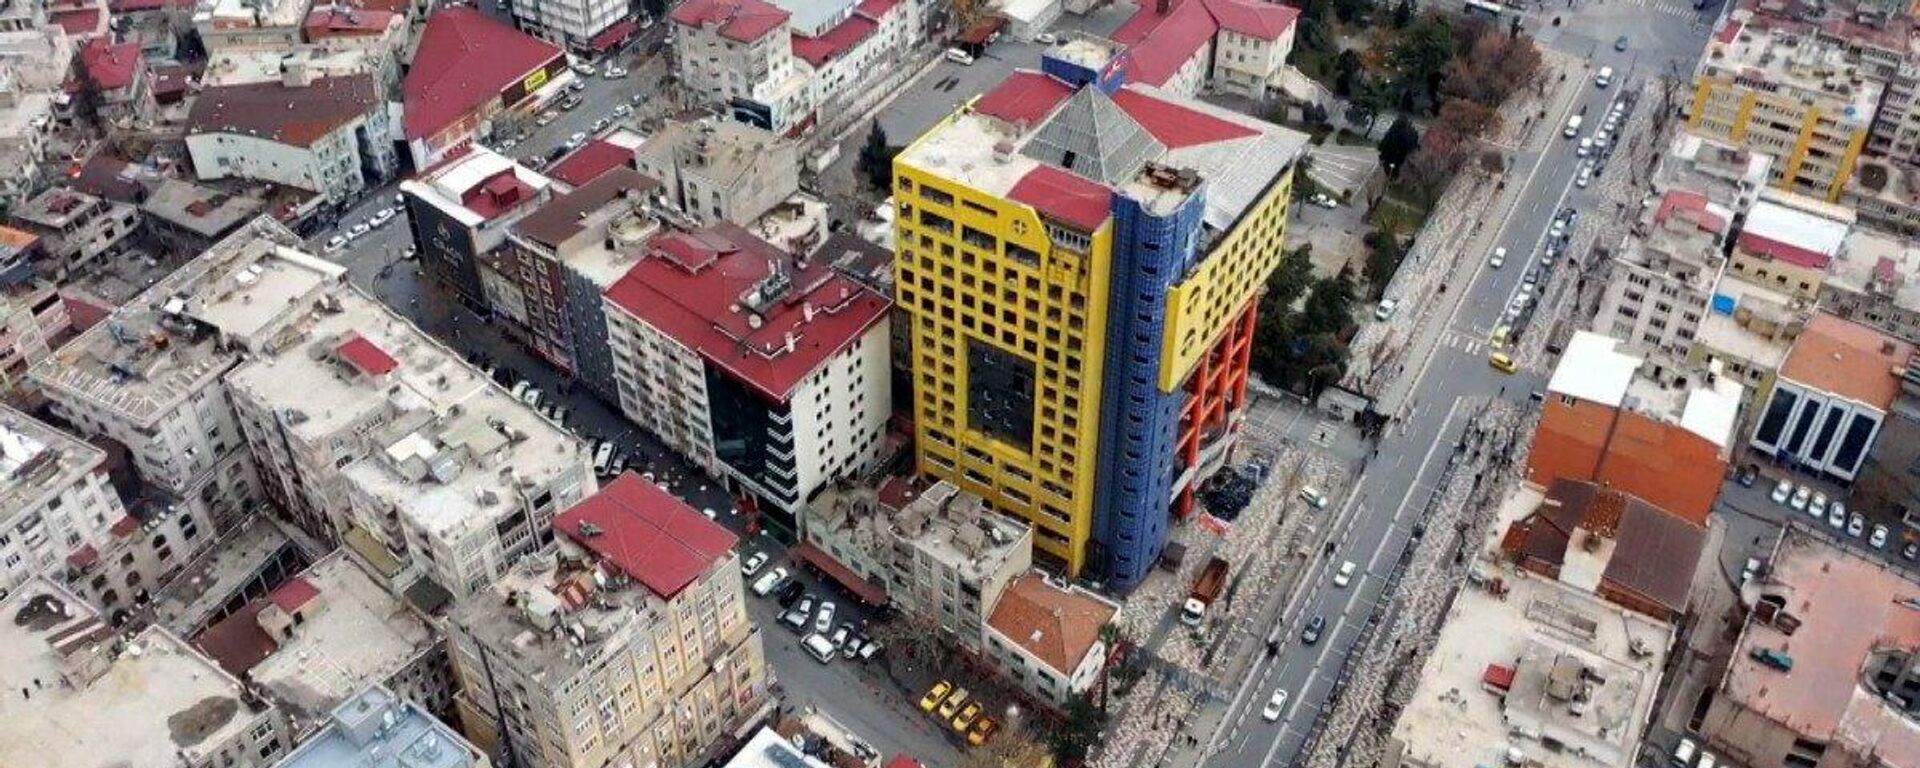 Dünyanın en saçma binası, Kahramanmaraş - Sputnik Türkiye, 1920, 10.01.2022